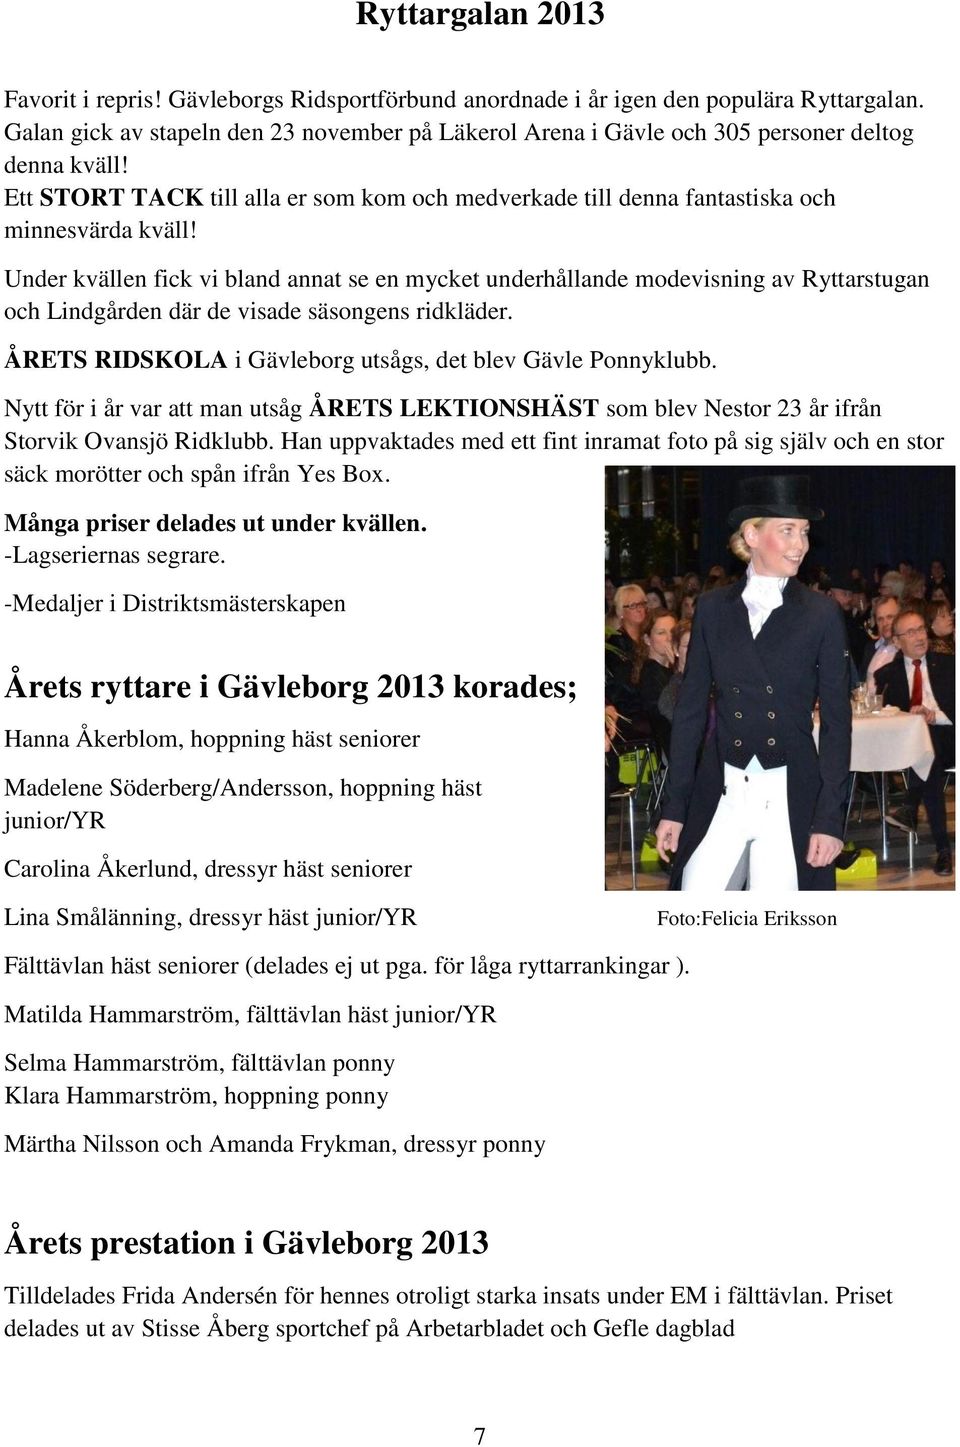 Under kvällen fick vi bland annat se en mycket underhållande modevisning av Ryttarstugan och Lindgården där de visade säsongens ridkläder. ÅRETS RIDSKOLA i Gävleborg utsågs, det blev Gävle Ponnyklubb.